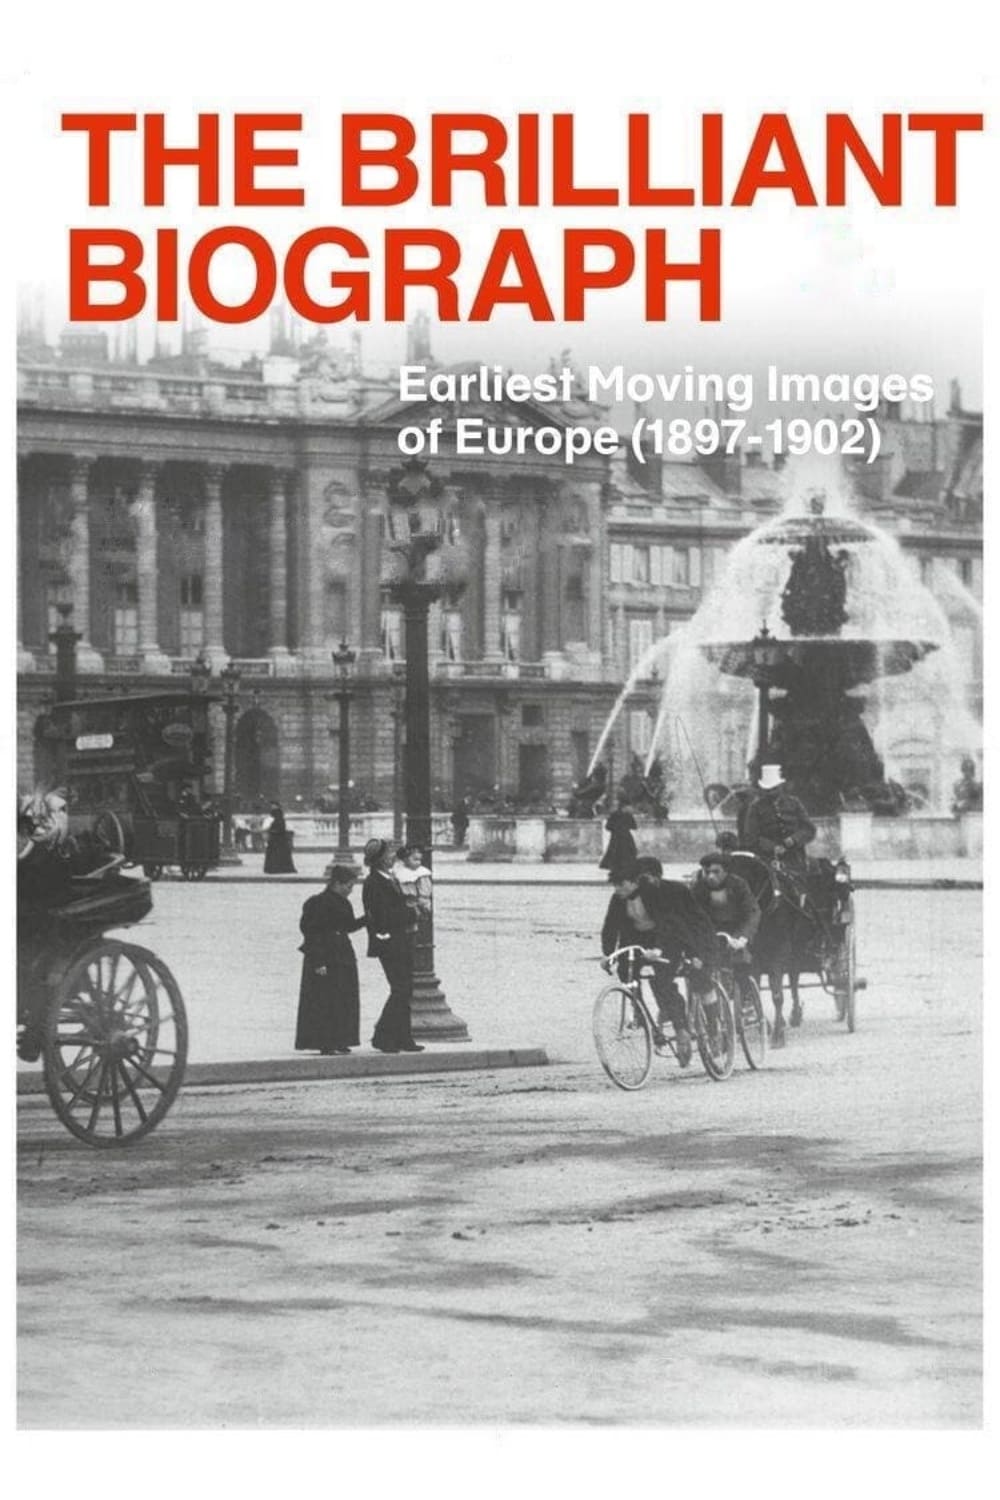 The Brilliant Biograph - Les Plus Anciennes Images Filmées d'Europe 1897-1902